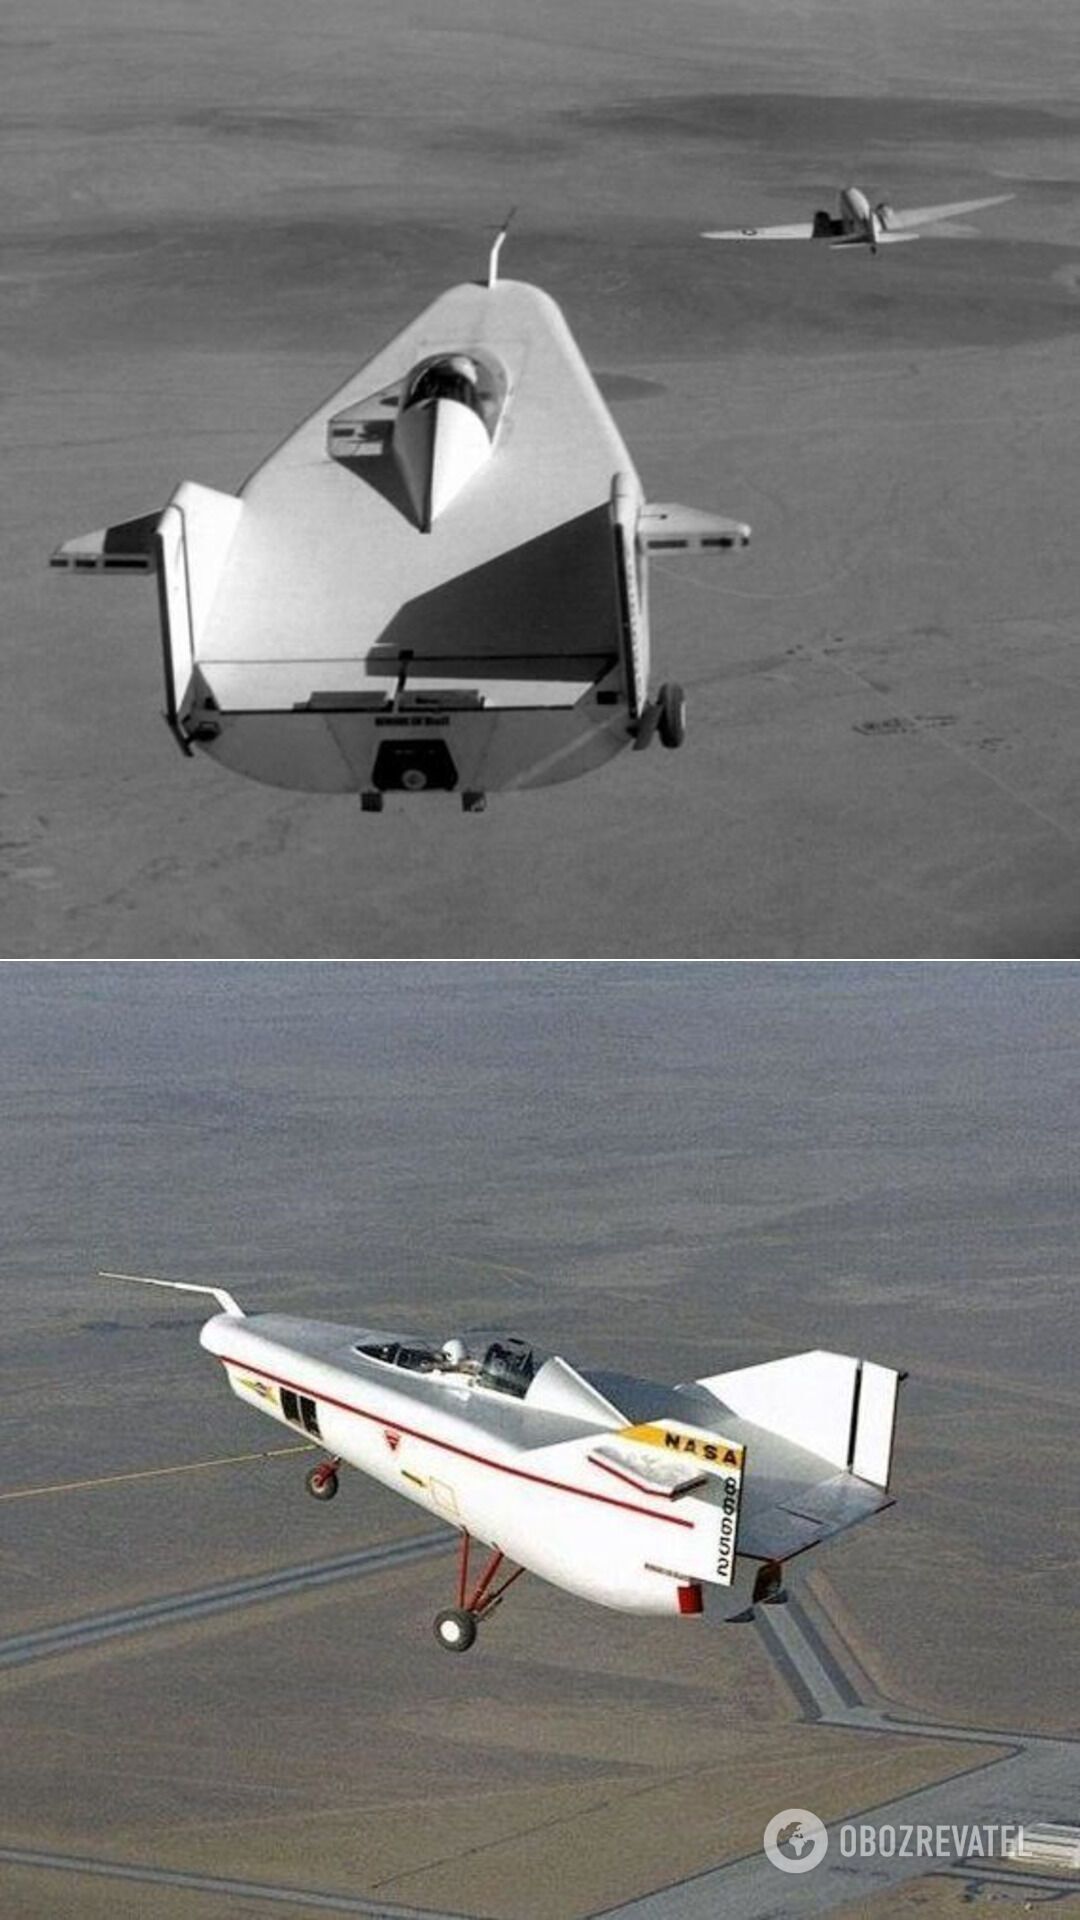 Проект NASA М2-F1, который можно назвать просто планером странной конструкции, так как у него не было не только крыльев, но и двигателя. Был предназначен в качестве капсулы для приземления астронавтов и получил прозвище "летающая ванна". Первый полет M2-F1 состоялся 16 августа 1963 года, а ровно через три года в тот же день – и последний